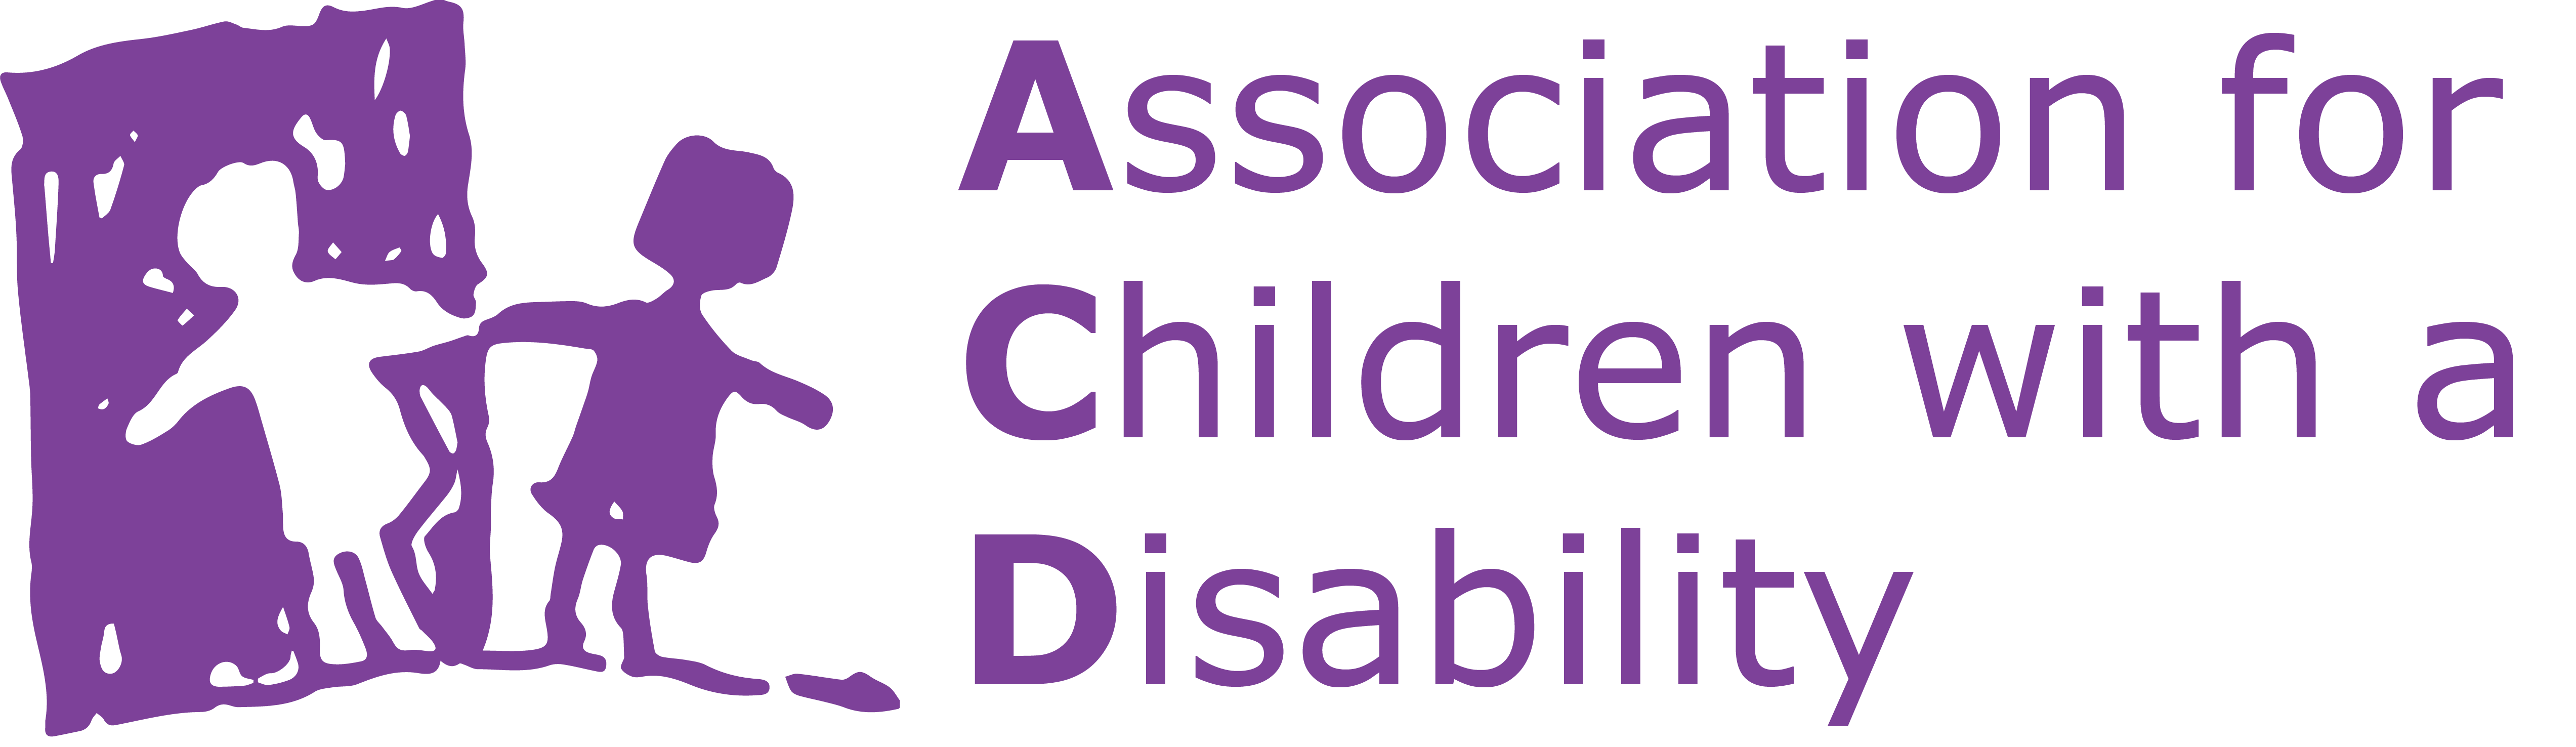 链接到主页。残疾儿童协会徽标：两个孩子手拉手的图标。